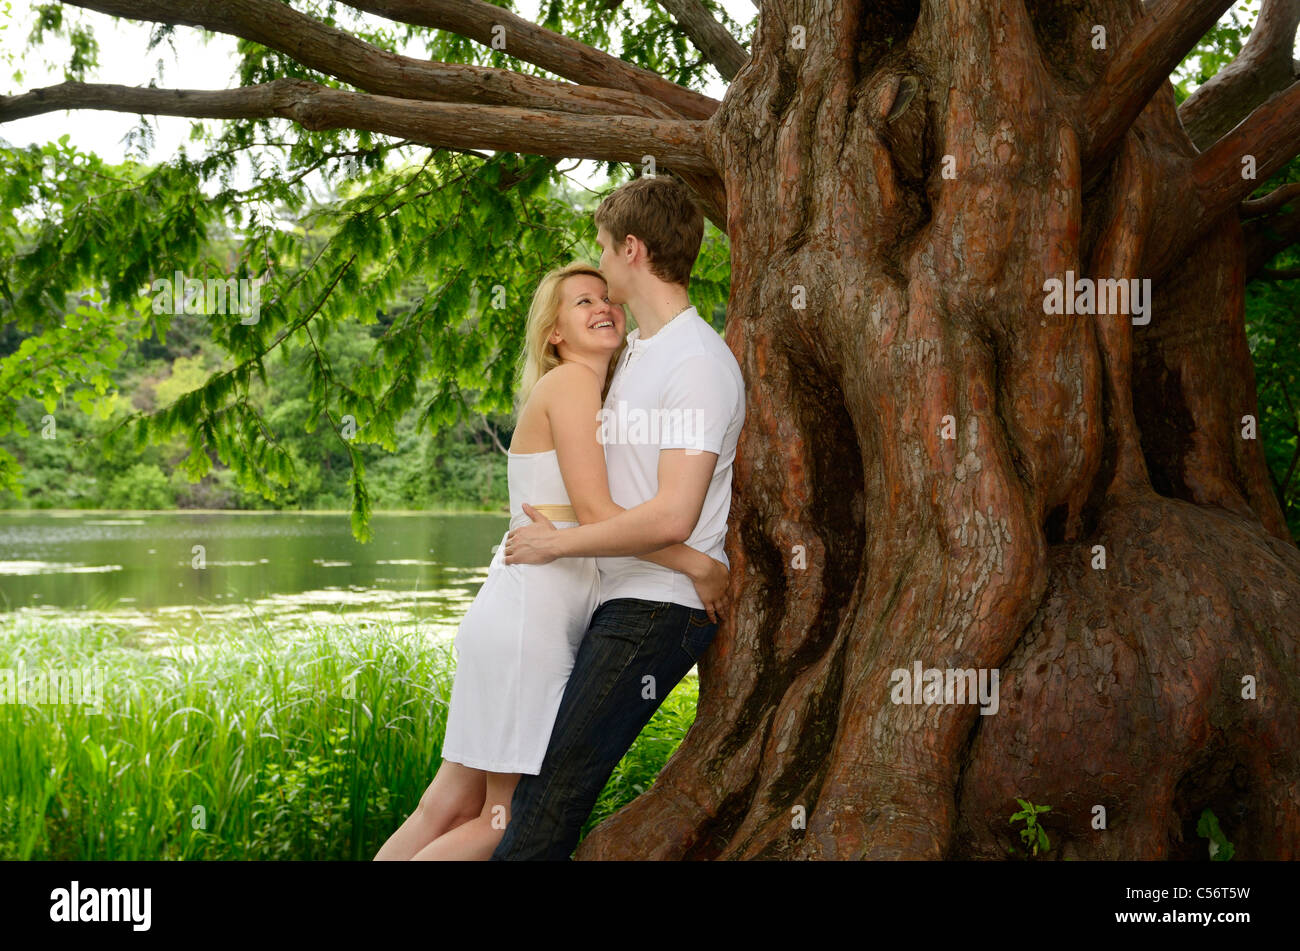 Glückliches Paar unter einem großen Dawn Redwood-Baum am Ufer von einem See Grenadier Teich High Park Toronto umarmen Stockfoto